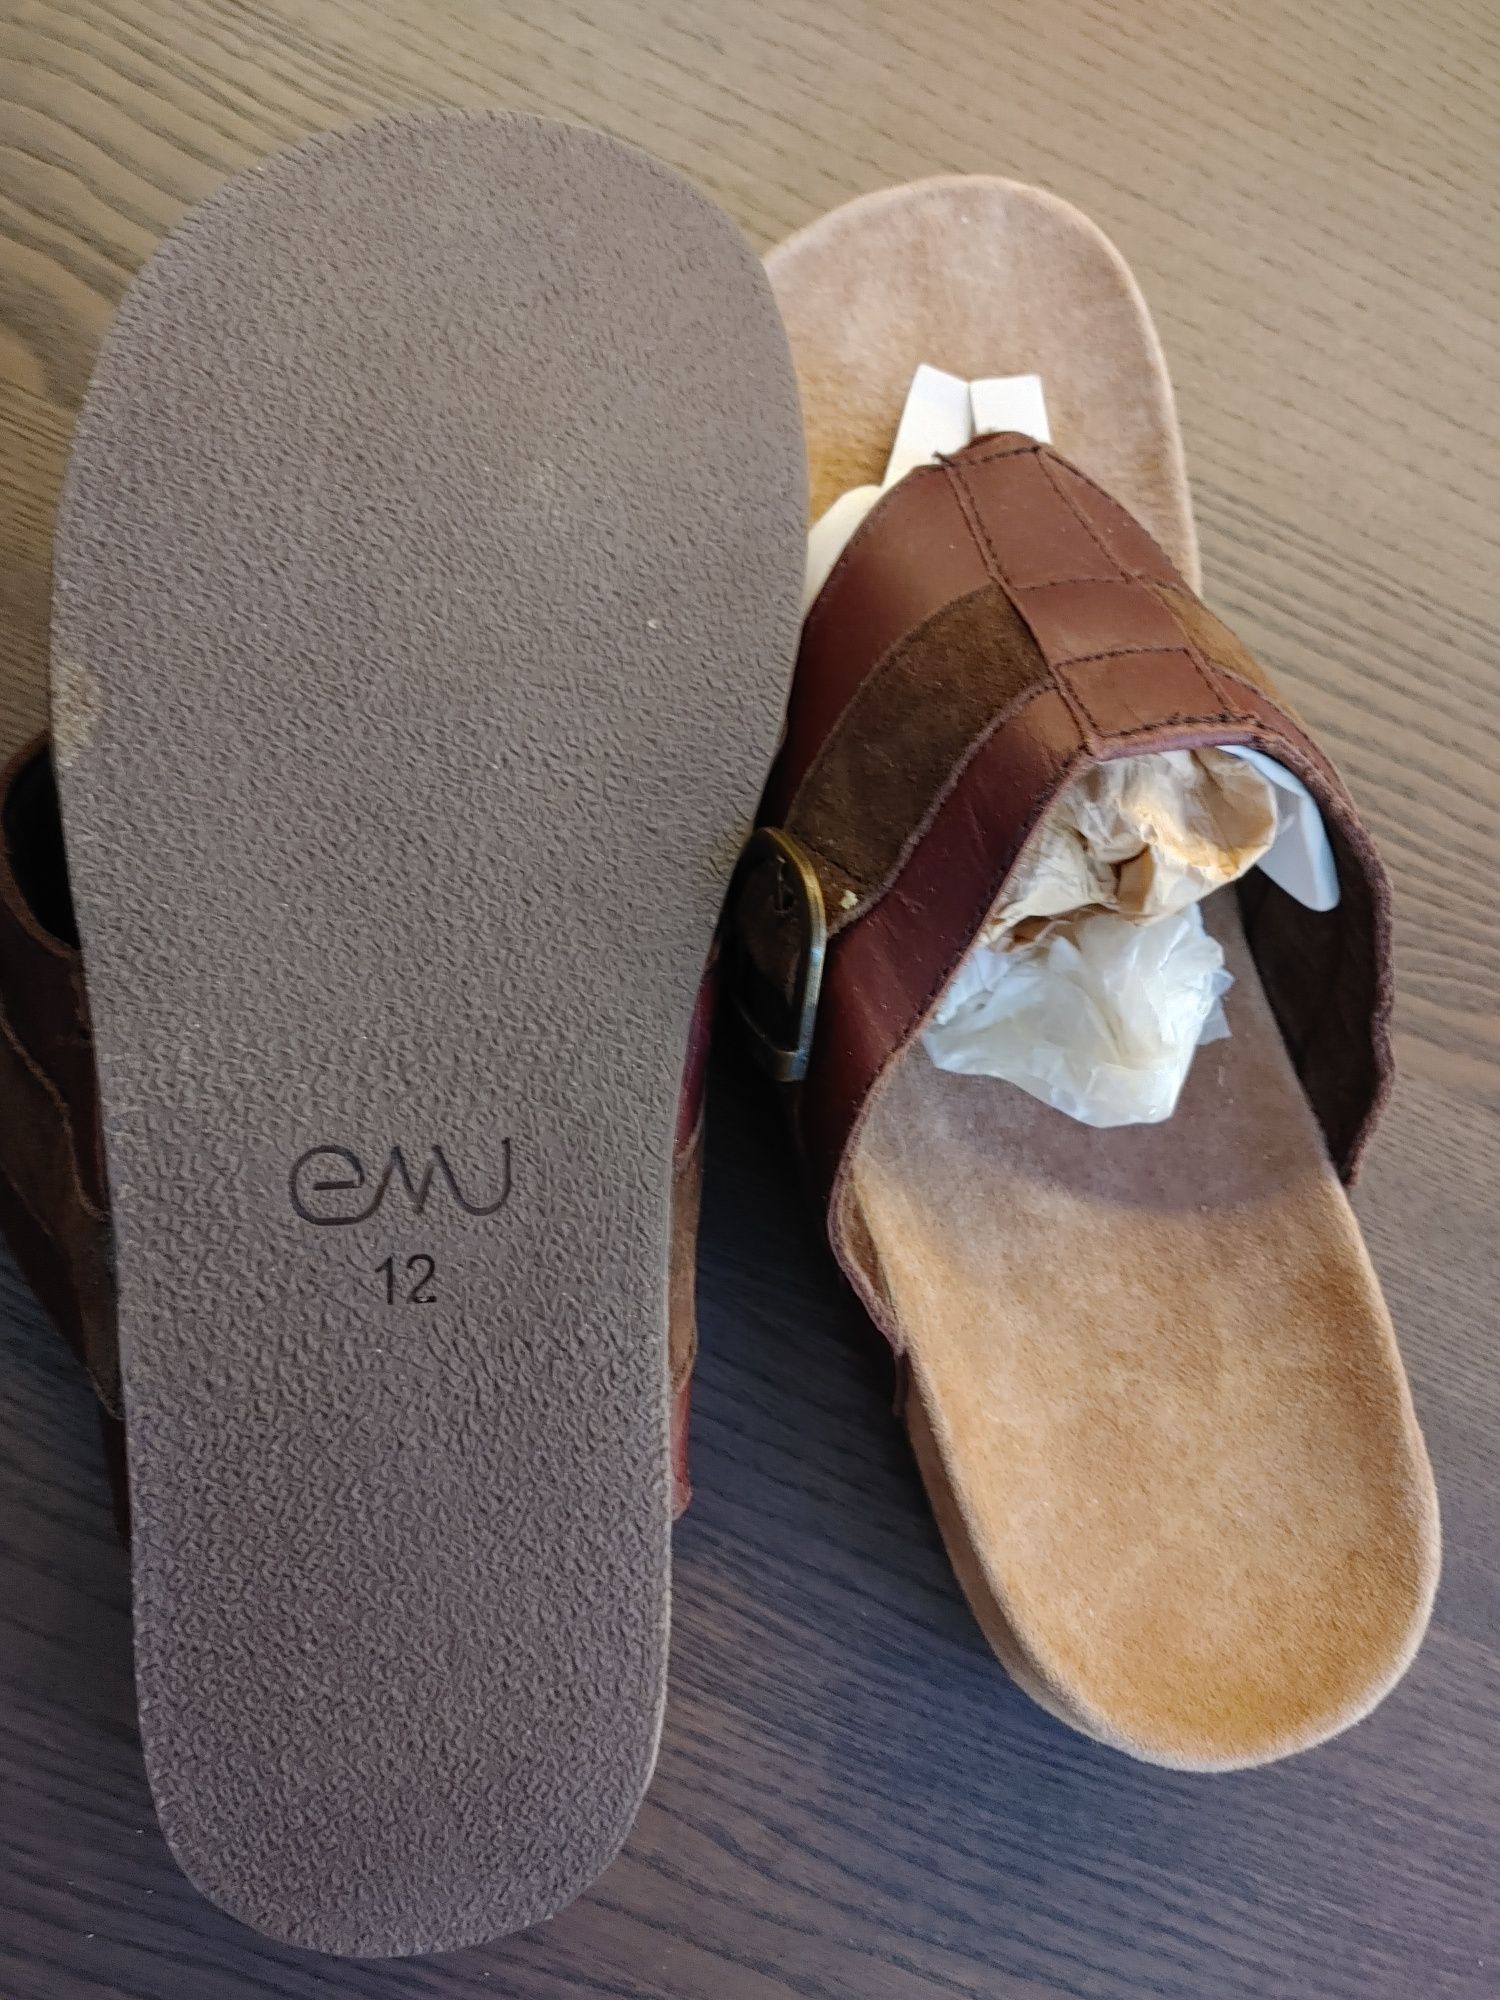 Sprzedam sandały męskie japonki Emu Australia rozmiar 9 USA 43 EUR